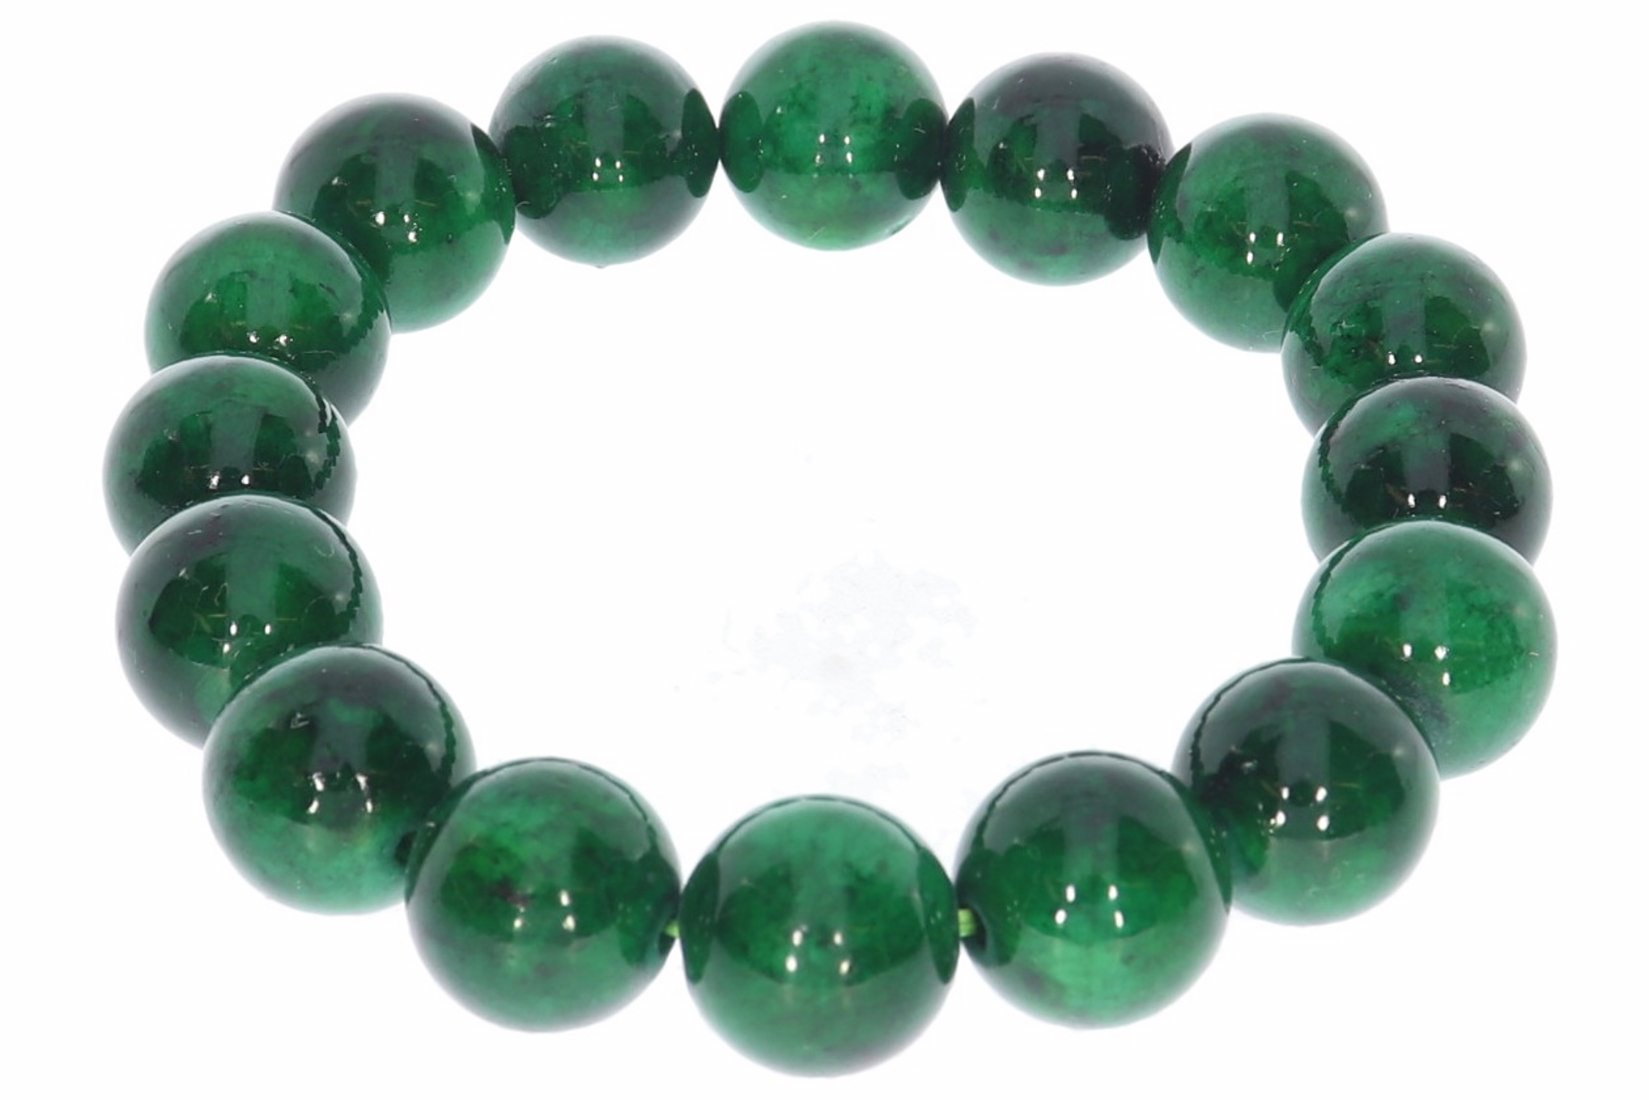 Mashan Jade grün 12mm Kugel Schmuck Edelstein Armband 12S202  - individuelle Größe